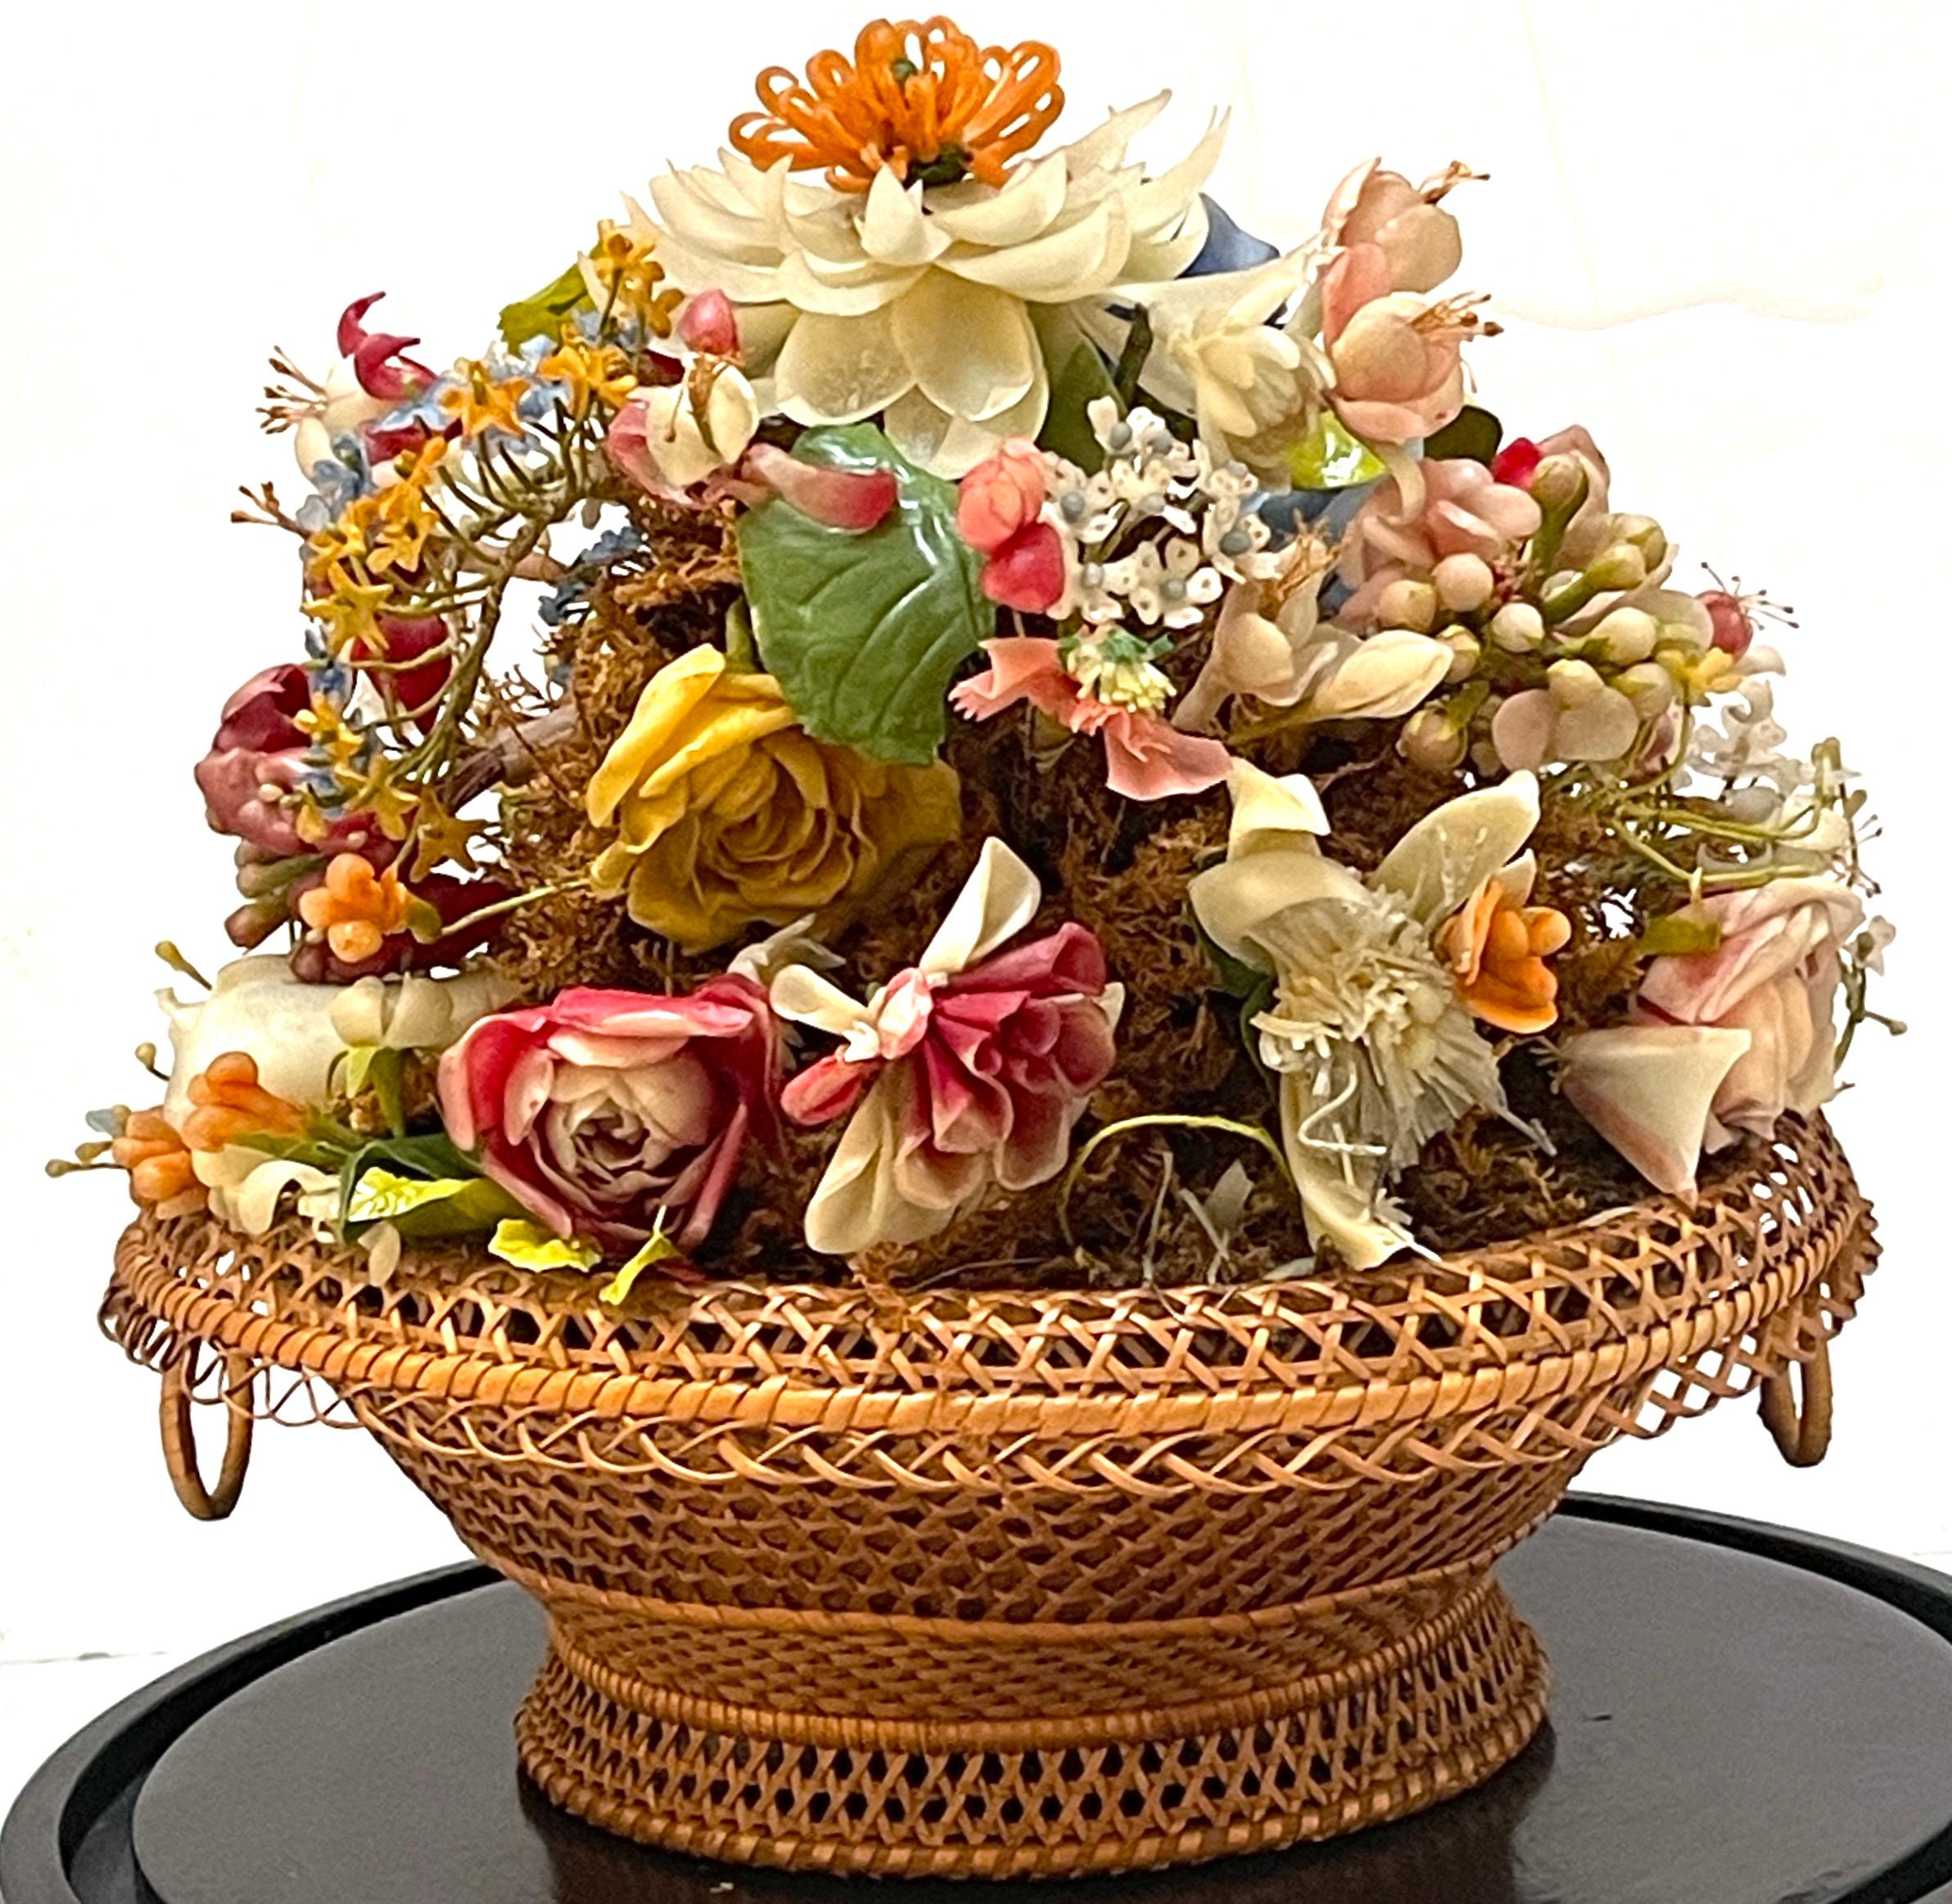 Victorian Wax Flower Still Life Basket Under Round Glass Dome For Sale 2